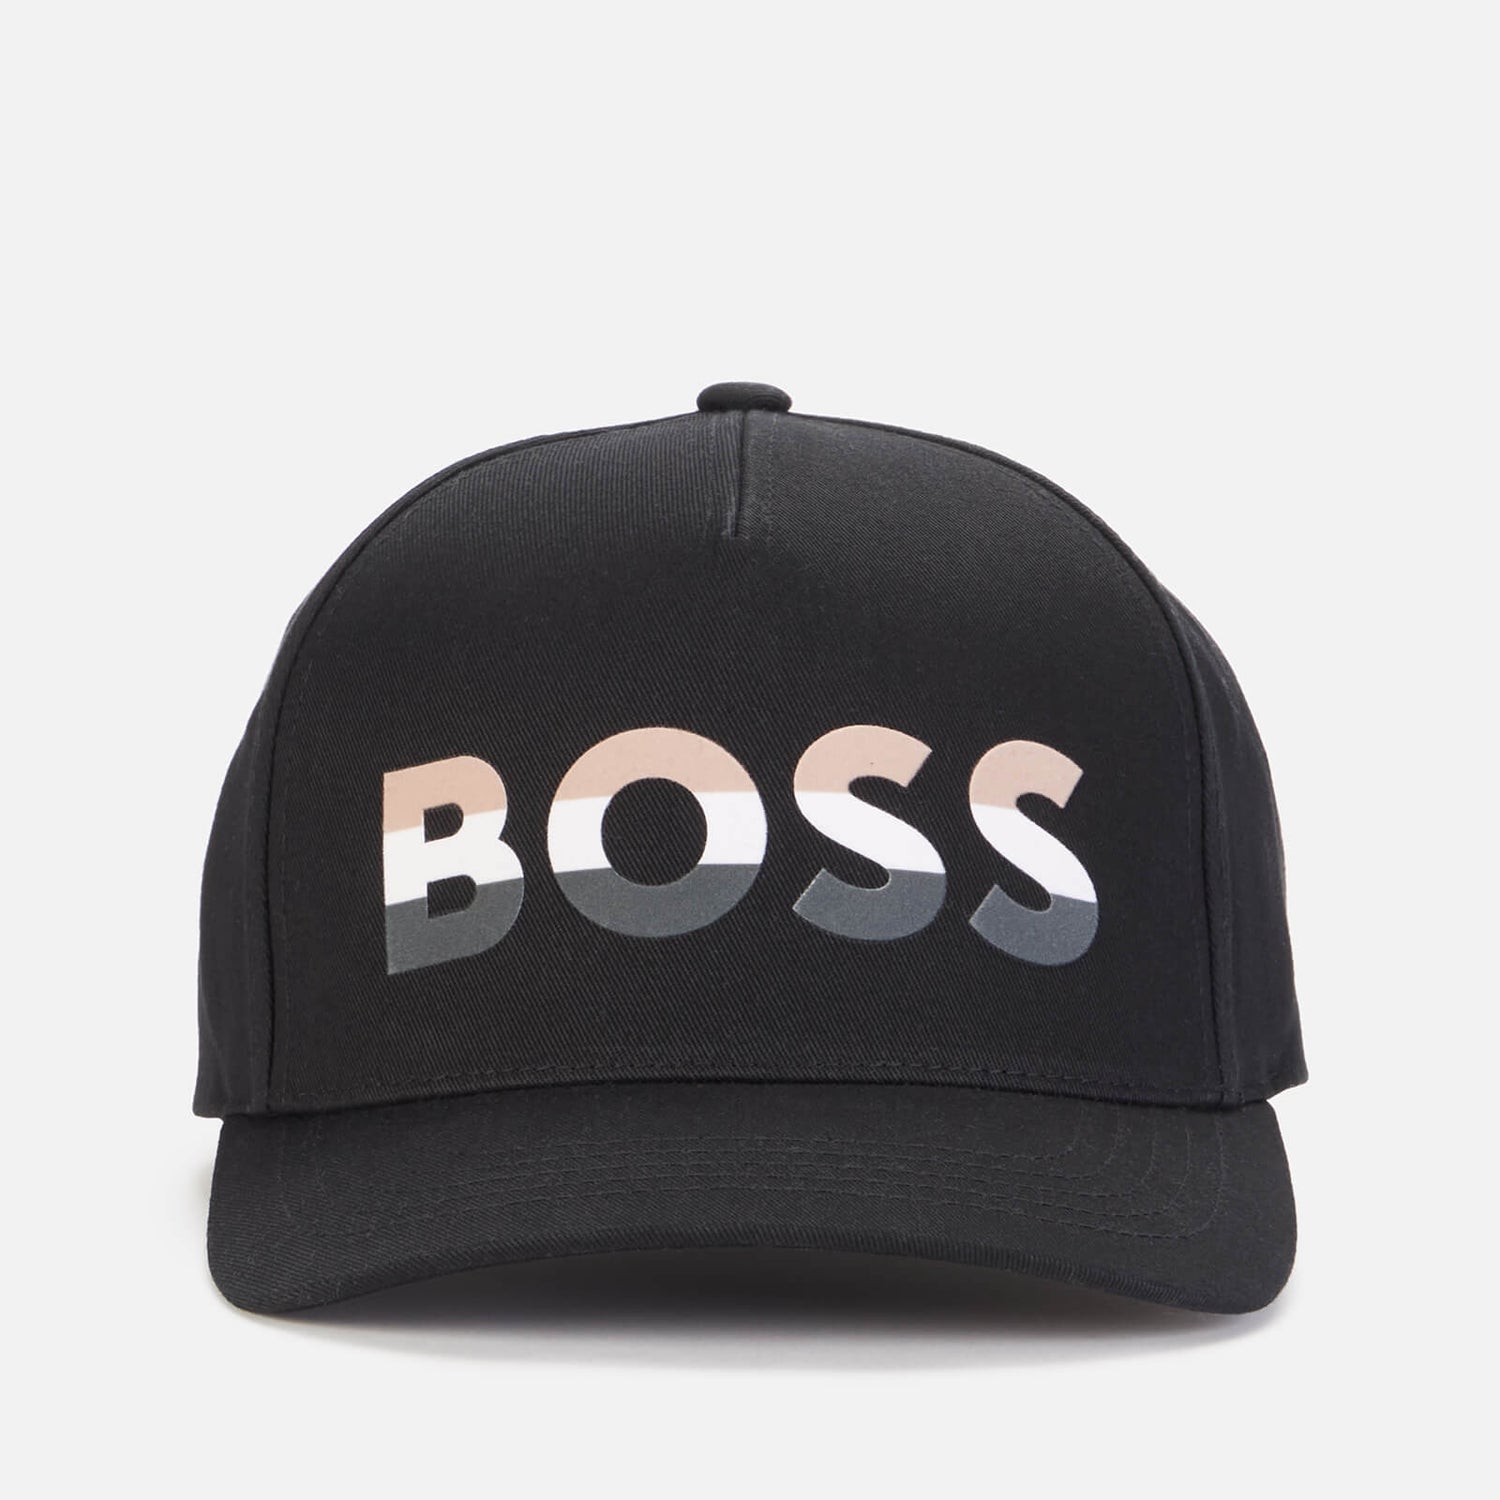 BOSS Men's Sevile Cap - Black